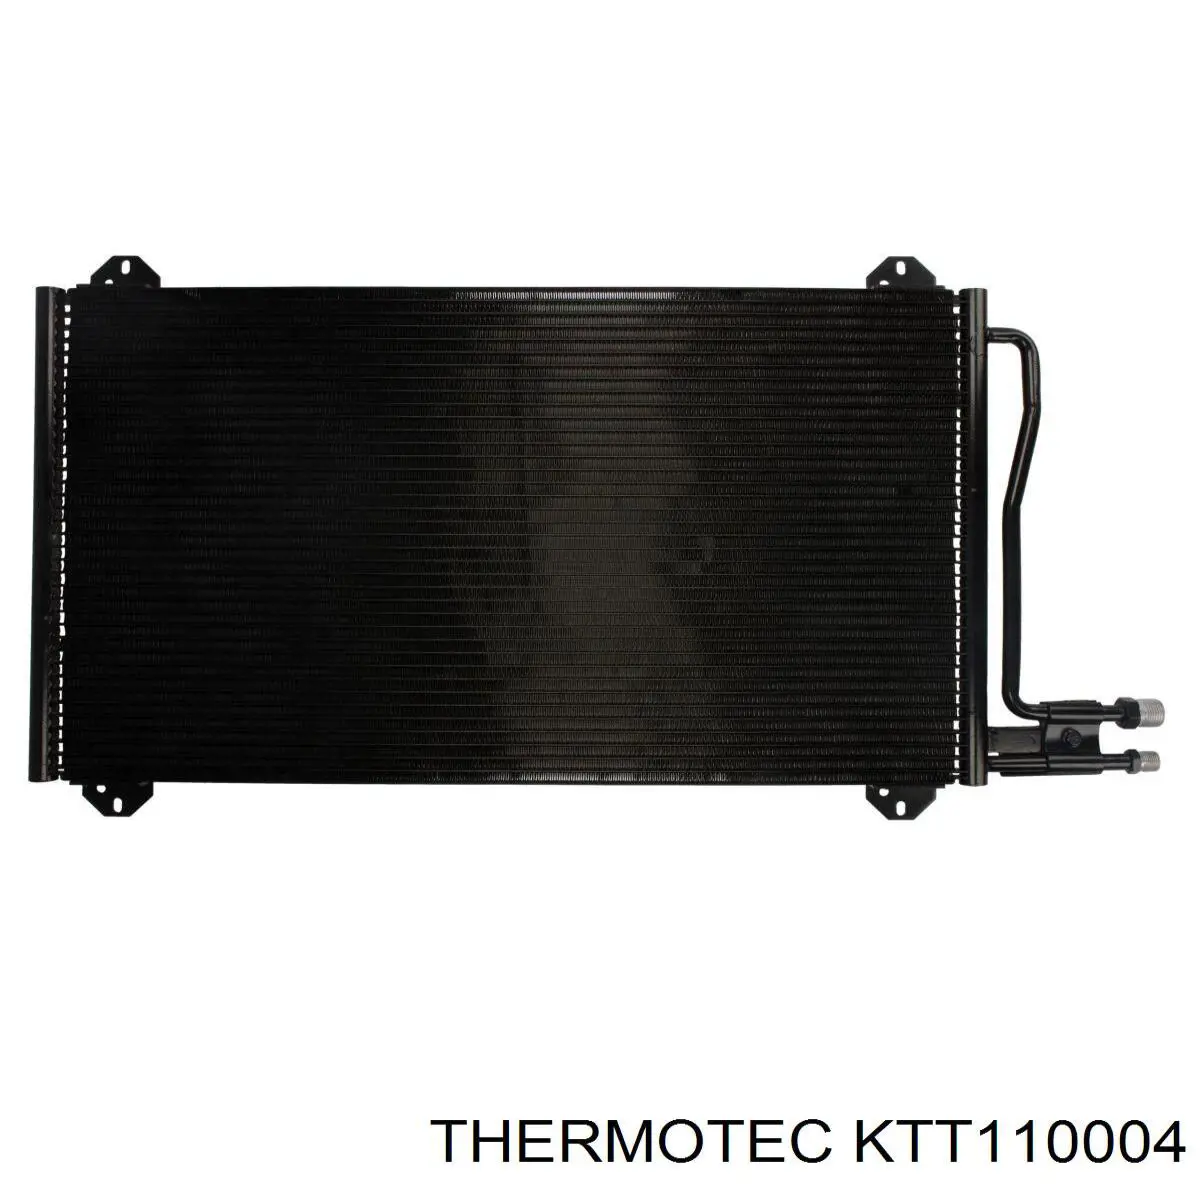 KTT110004 Thermotec condensador aire acondicionado